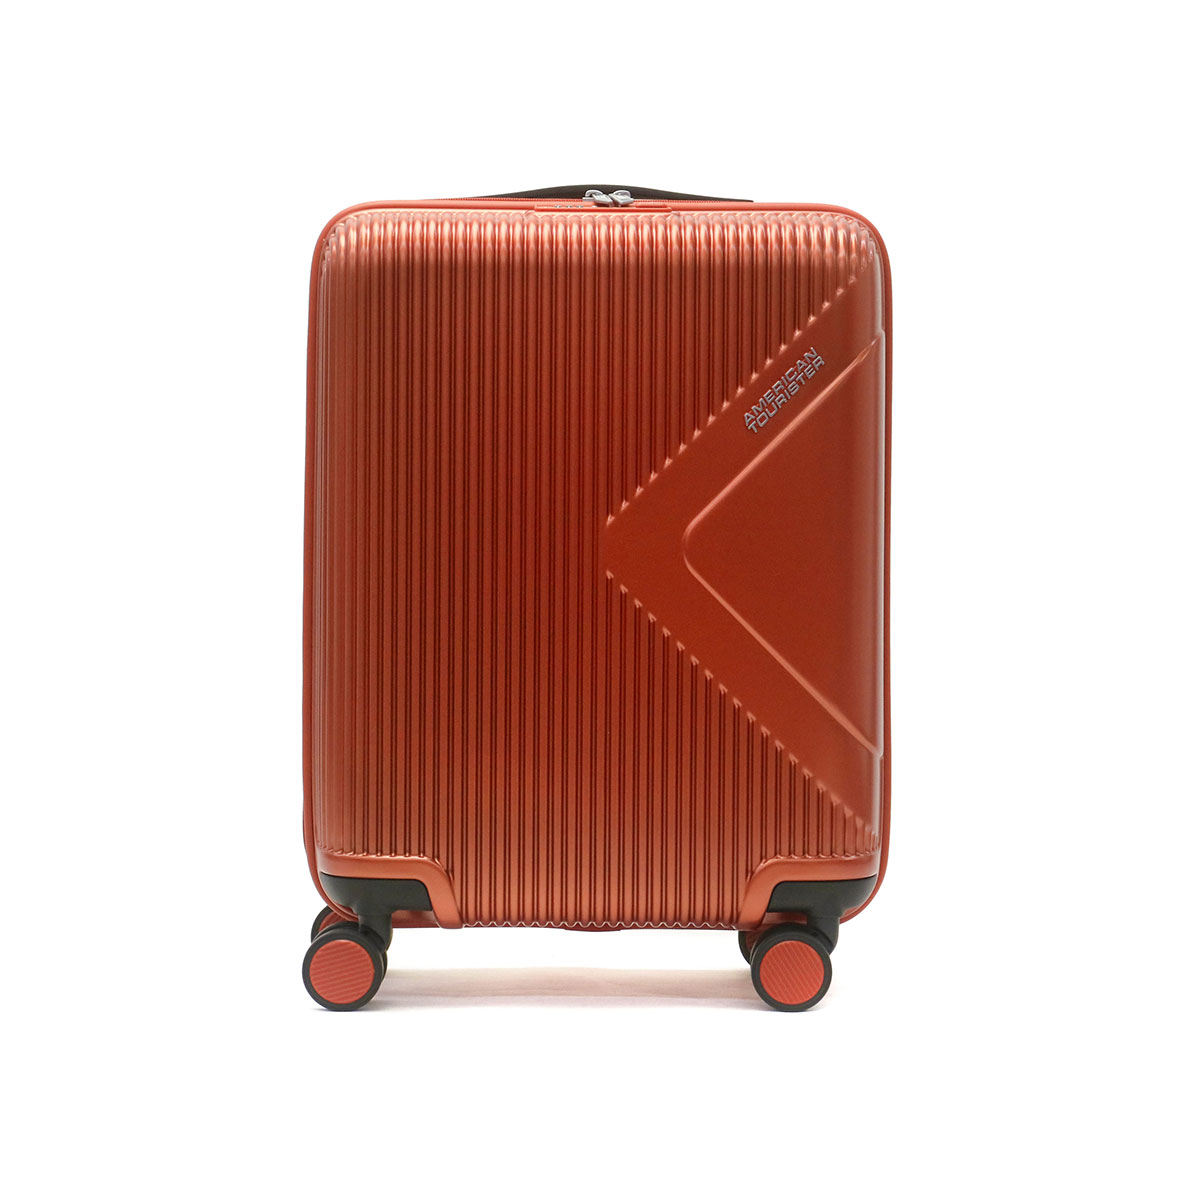 アメリカンツーリスター スーツケース 機内持ち込みの人気商品・通販 